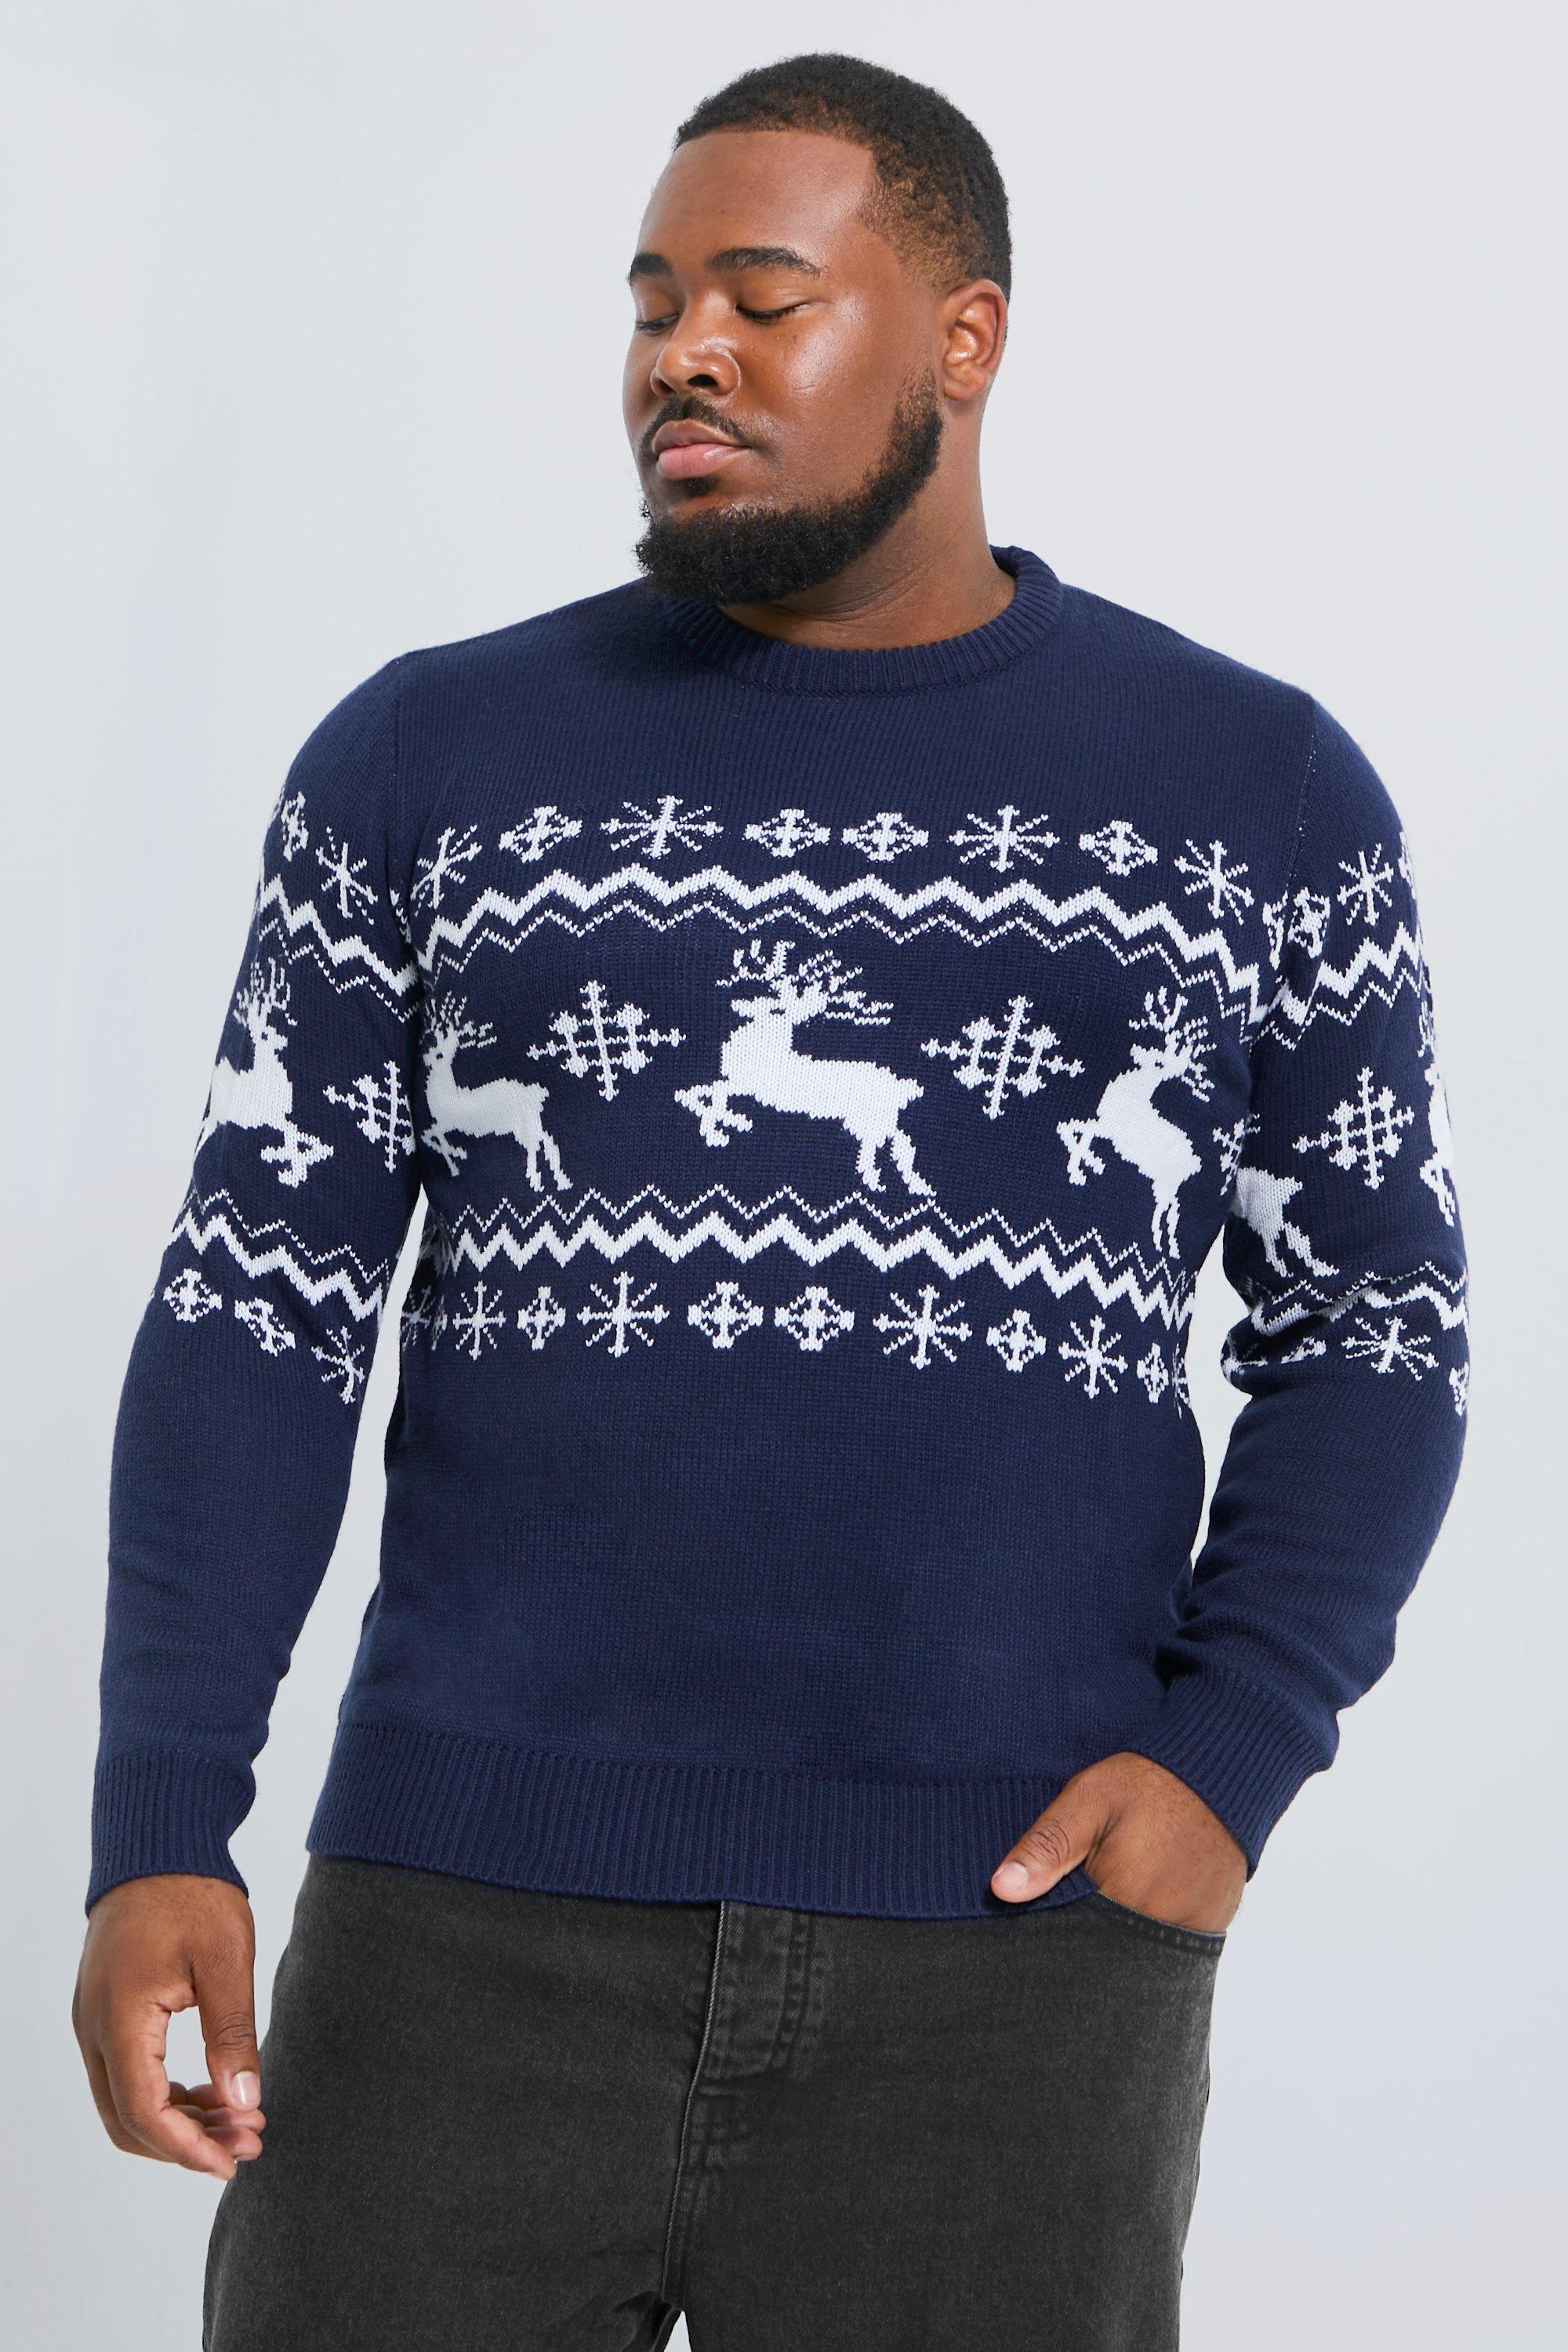 boohooMAN Mens Reindeer Fair Isle Christmas Sweater - Red